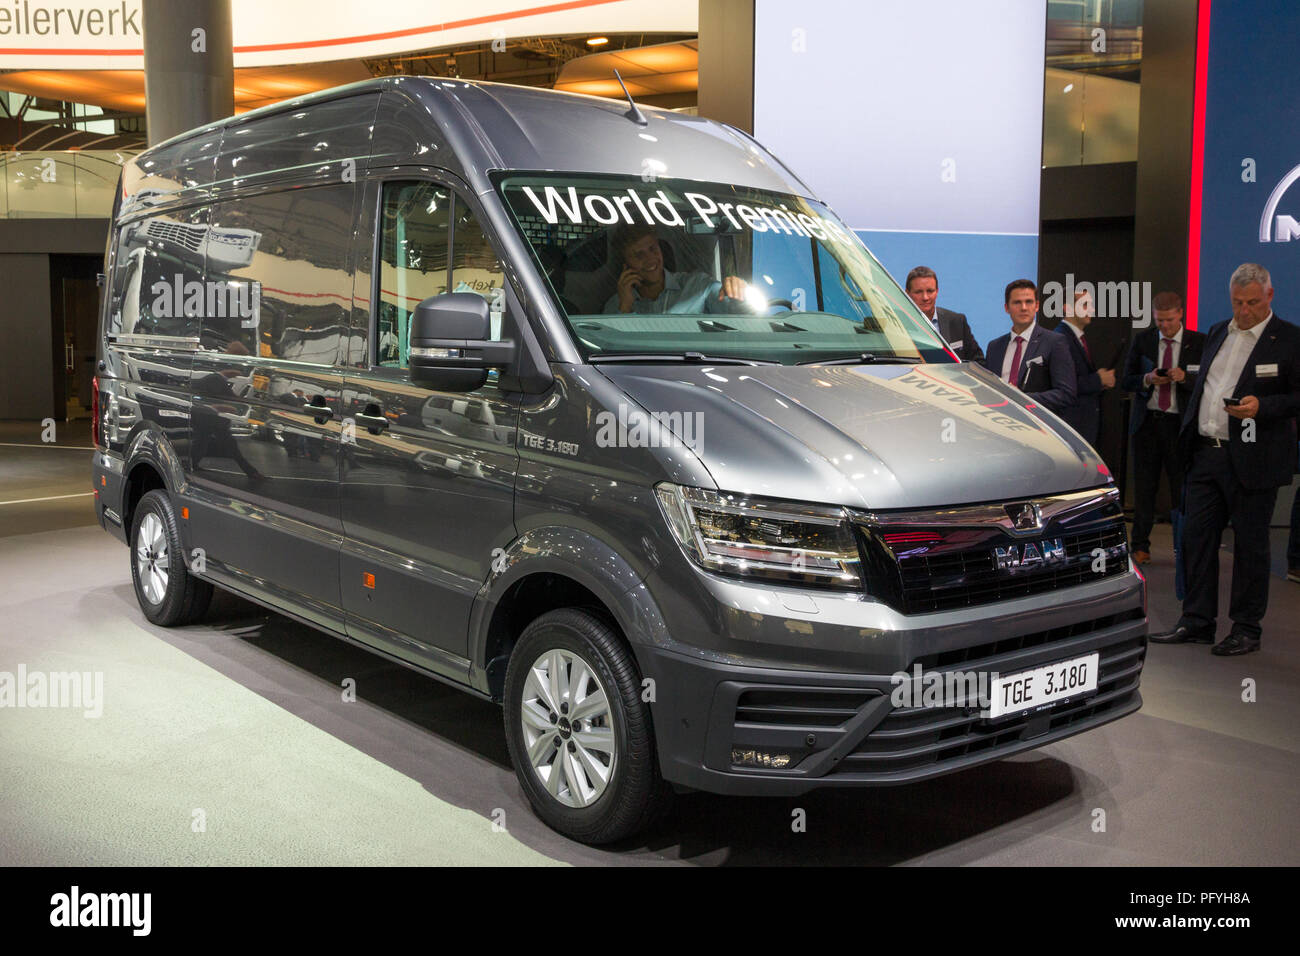 HANNOVER, Deutschland - 21.September 2016: MANN TGE 3.180 van präsentiert auf der Internationalen Automobil-Ausstellung IAA für Nutzfahrzeuge. Stockfoto